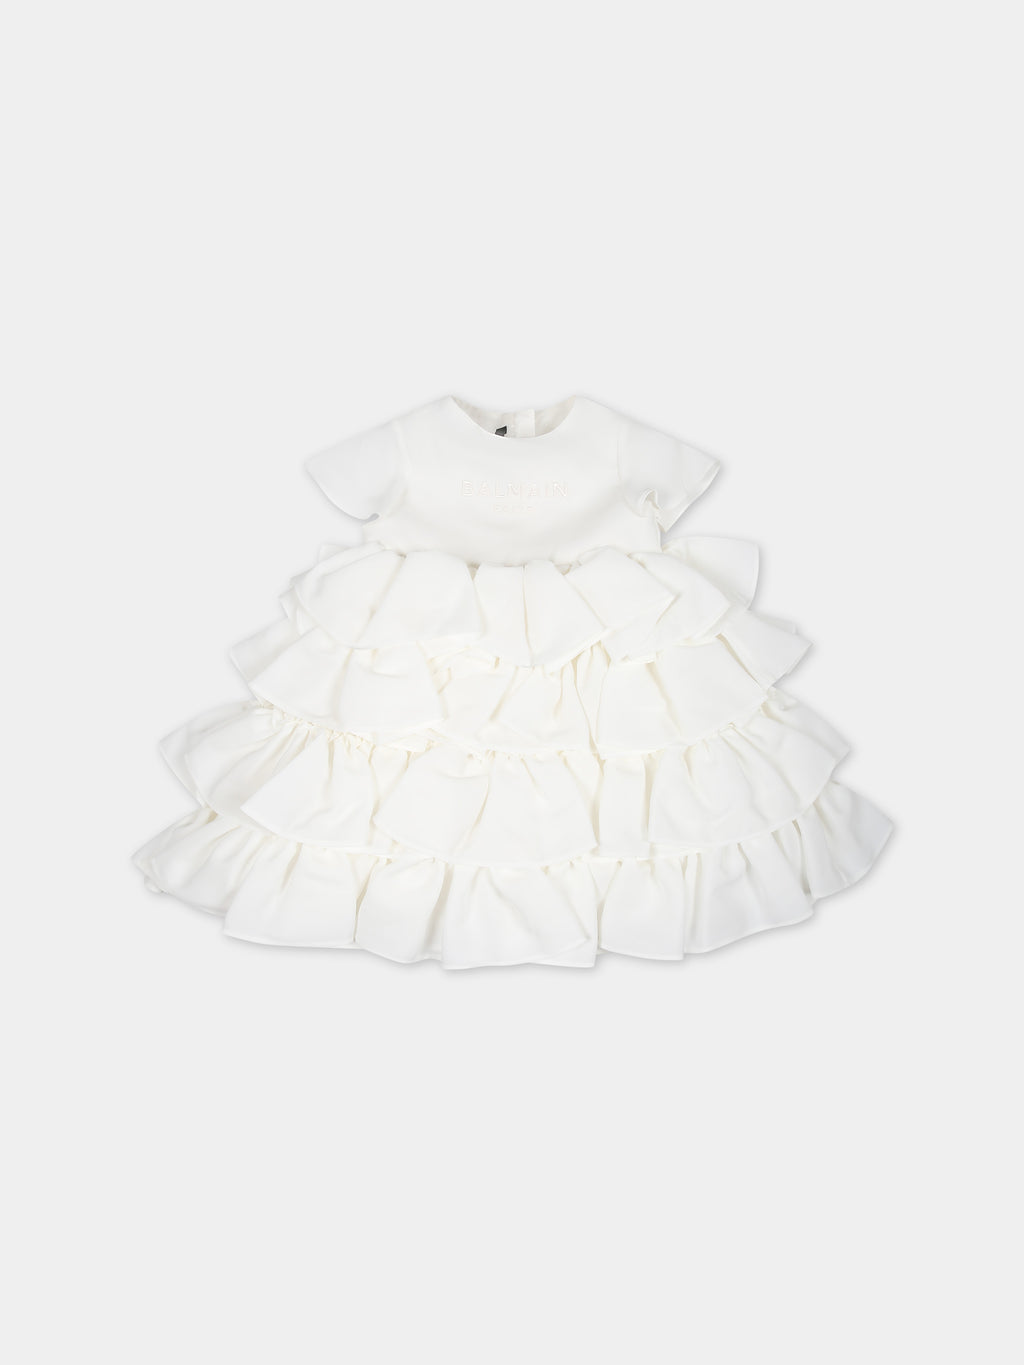 Elegant white dress for baby girl with logo